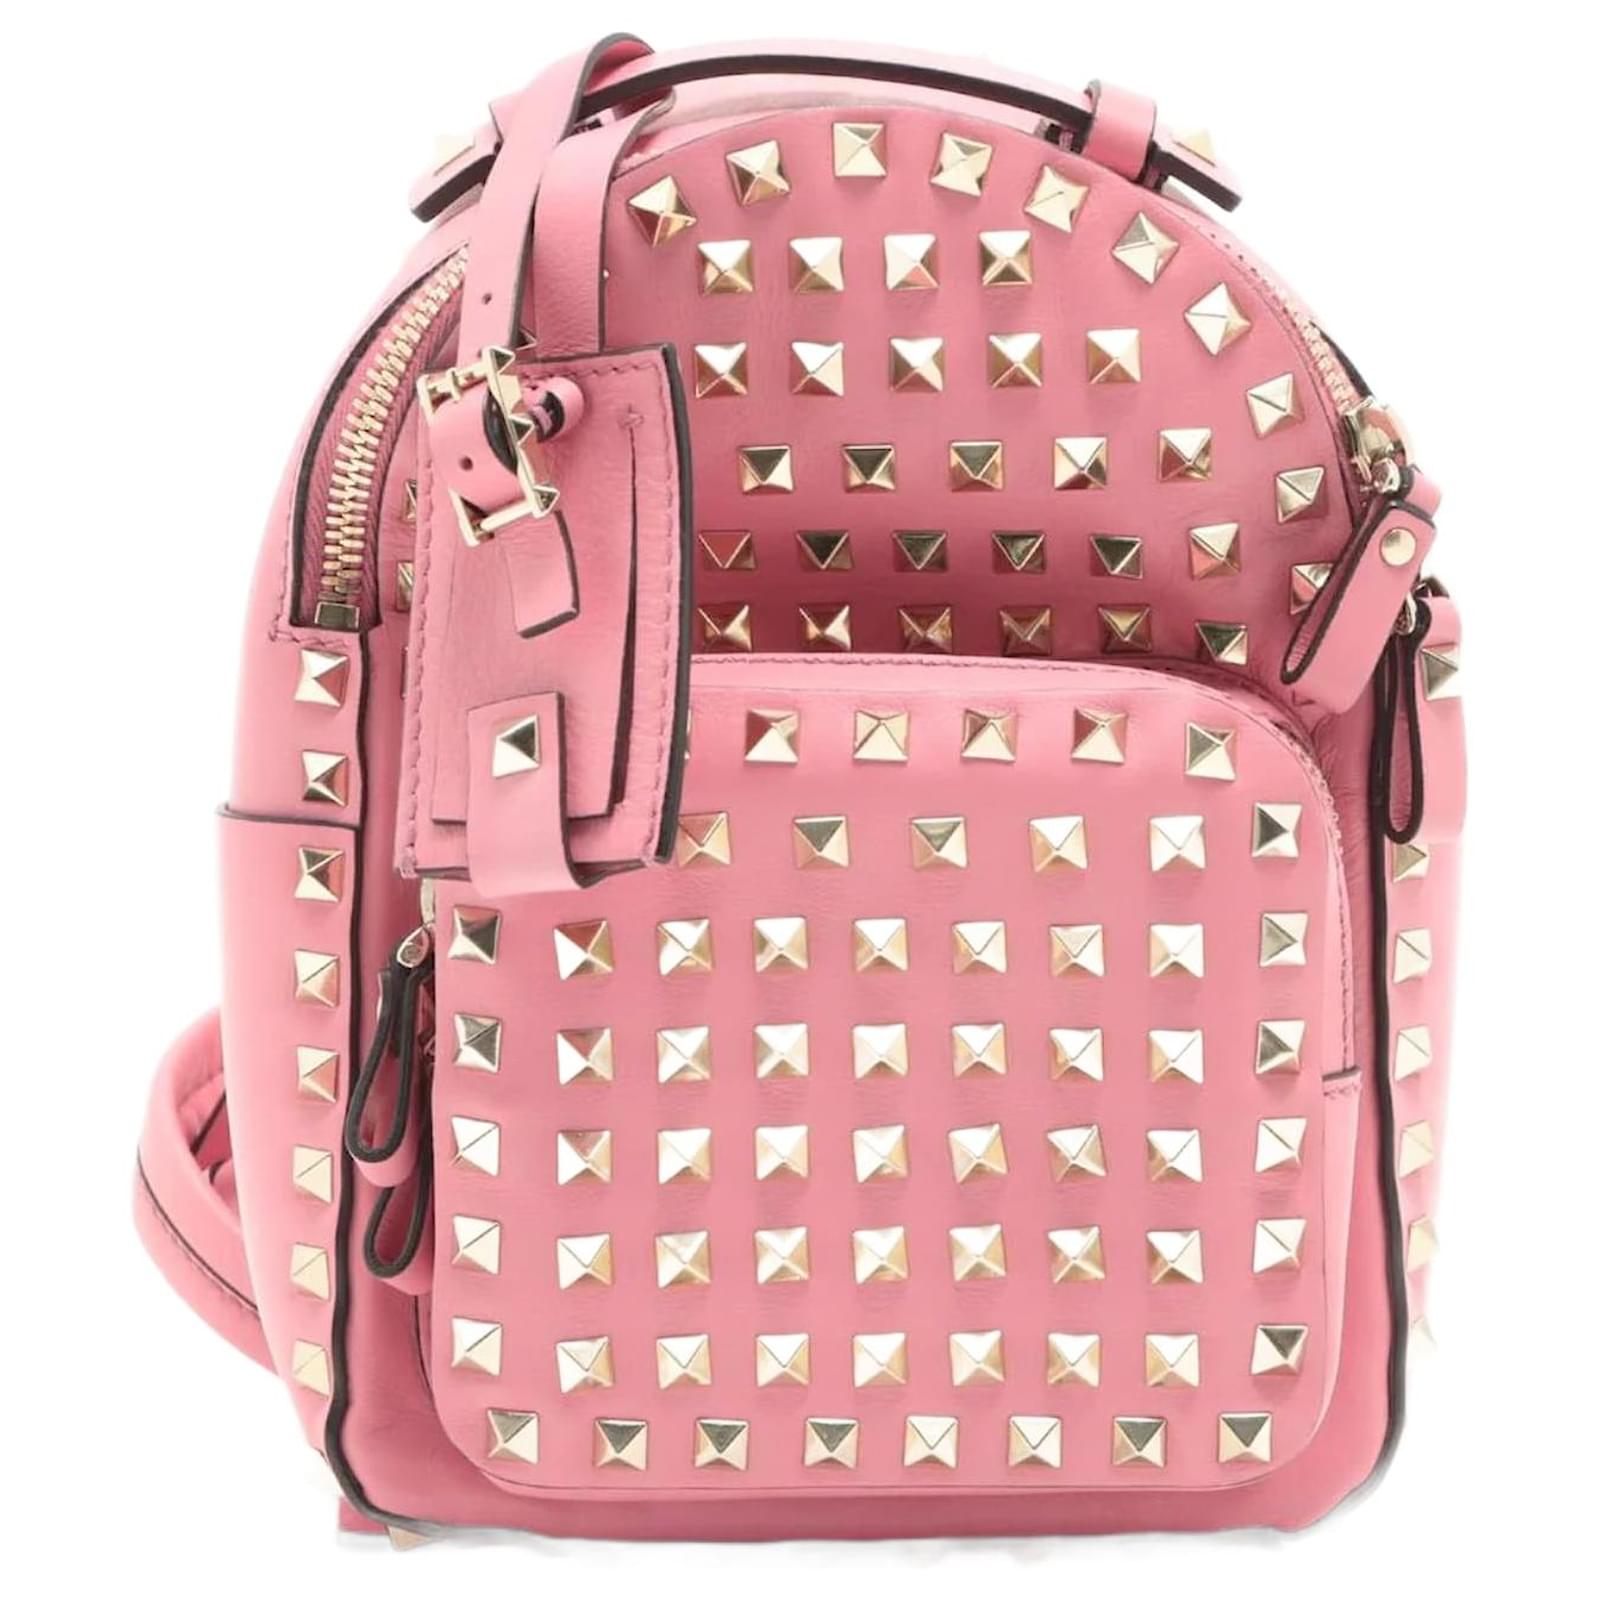 Valentino Garavani Pre-Owned Rockstud Embellished Backpack